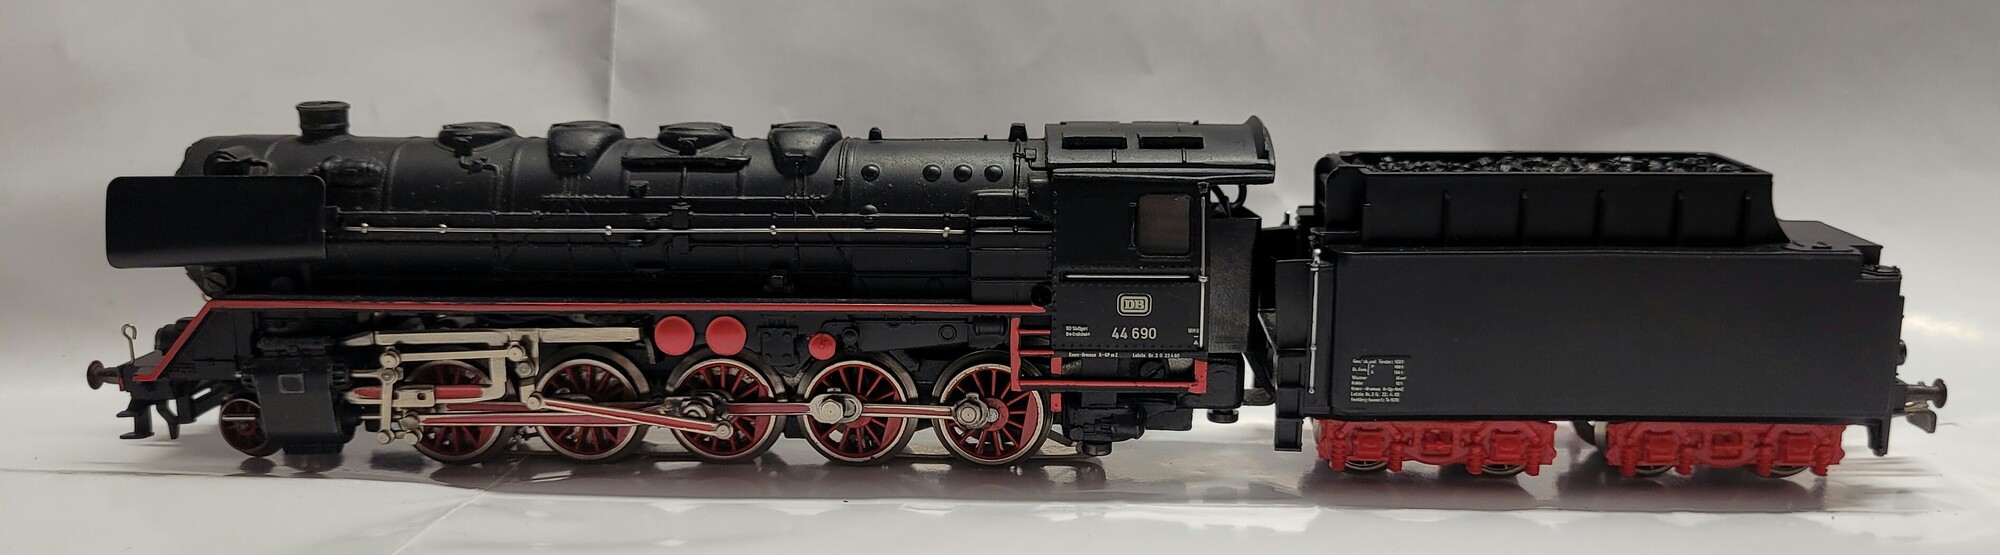 Märklin H0 DB Dampflokomotive BR 44